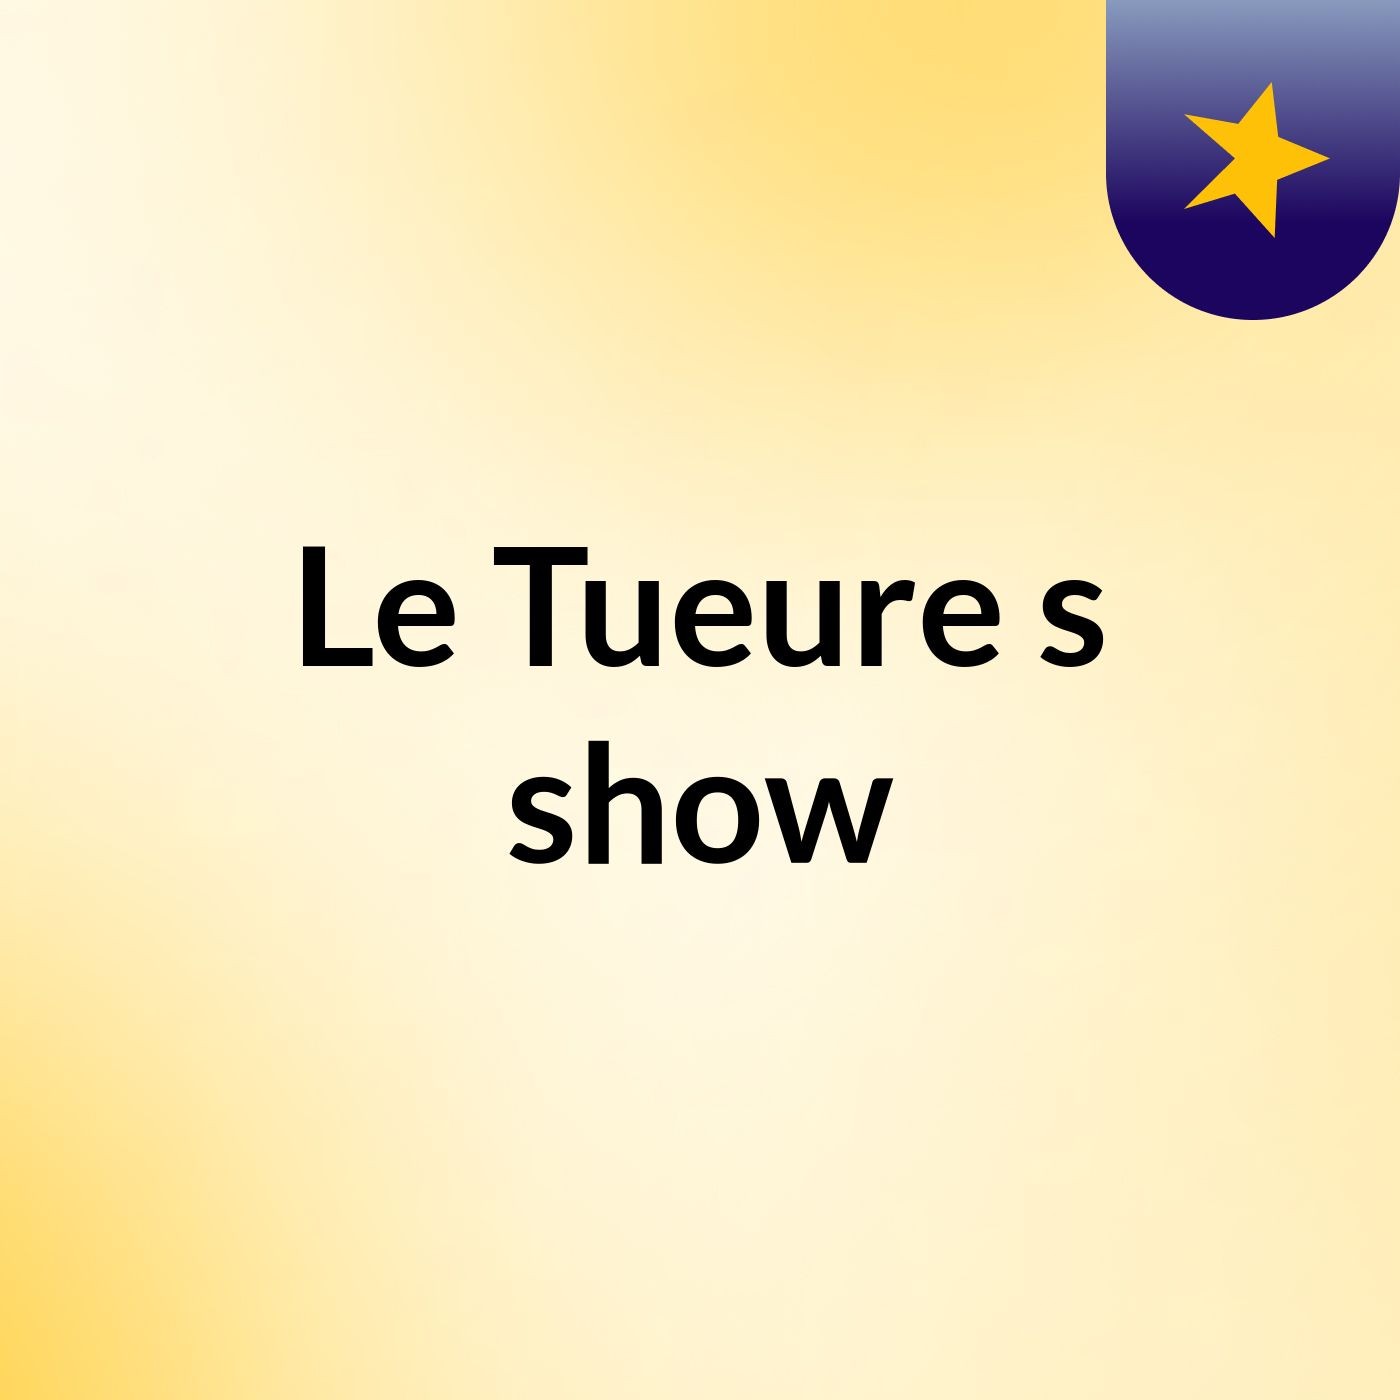 Le Tueure's show